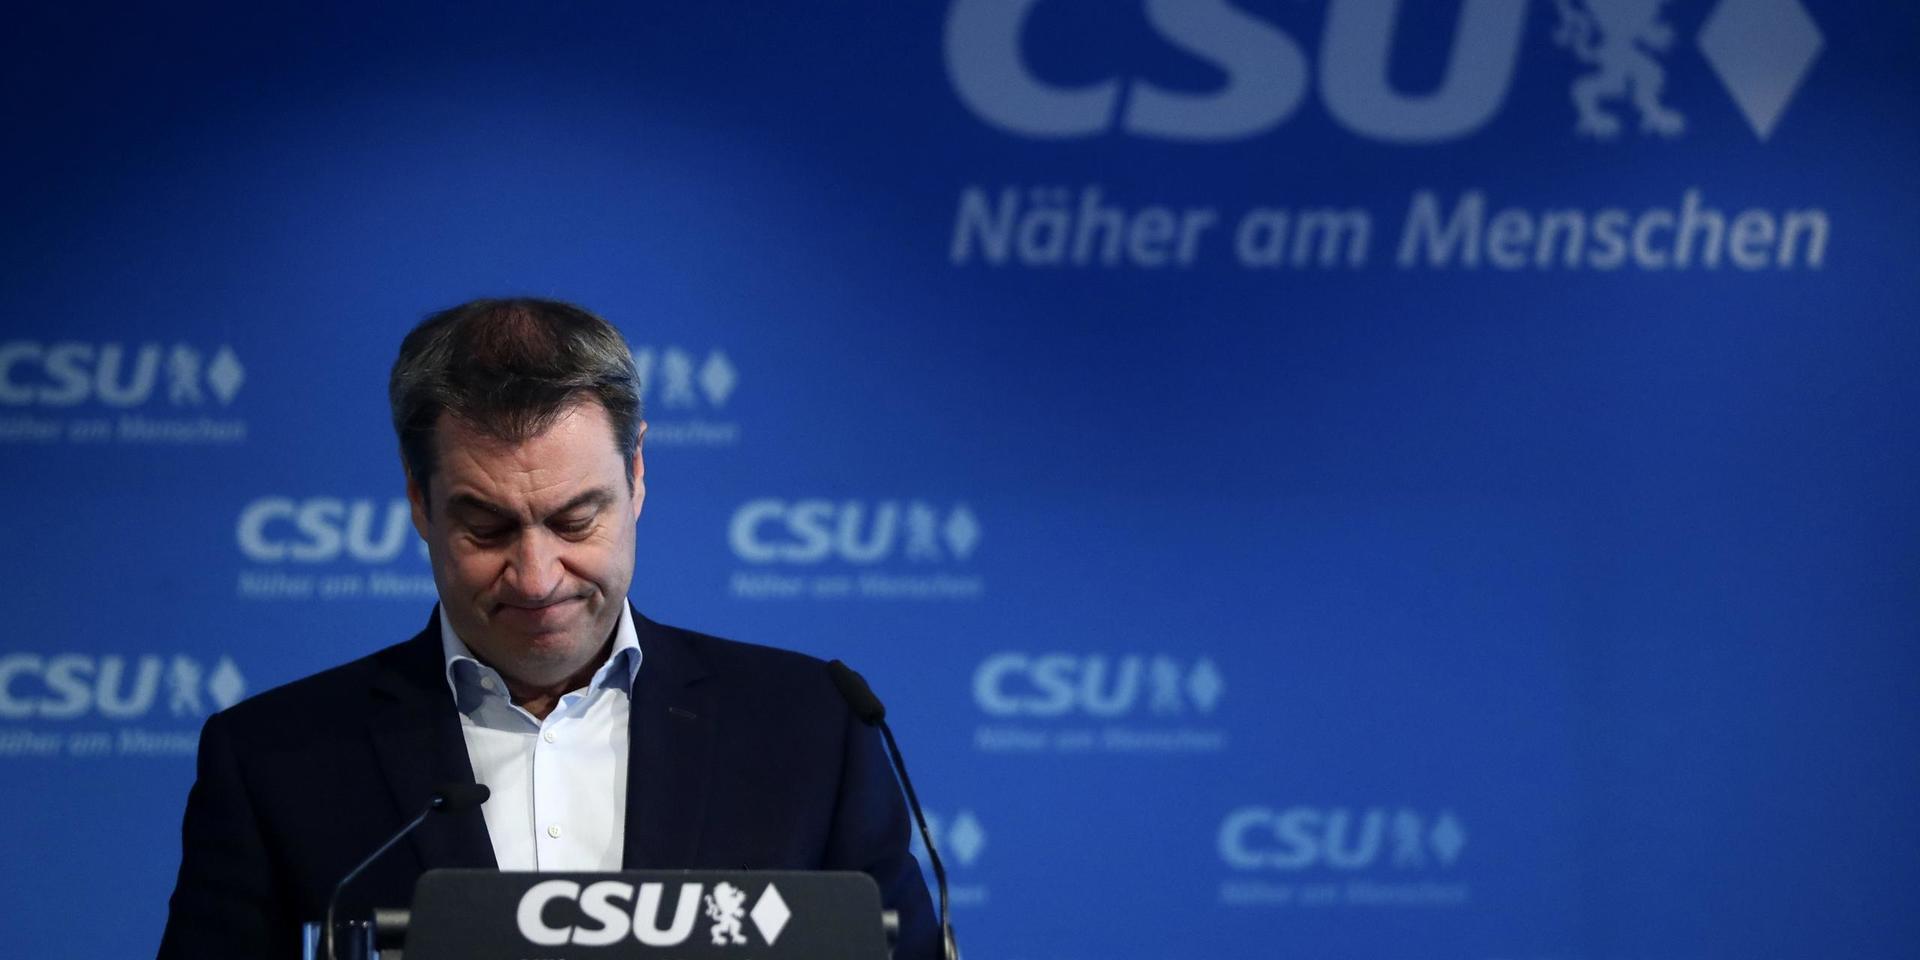 Markus Söder under presskonferensen där han meddelade att han accepterar CDU:s beslut.